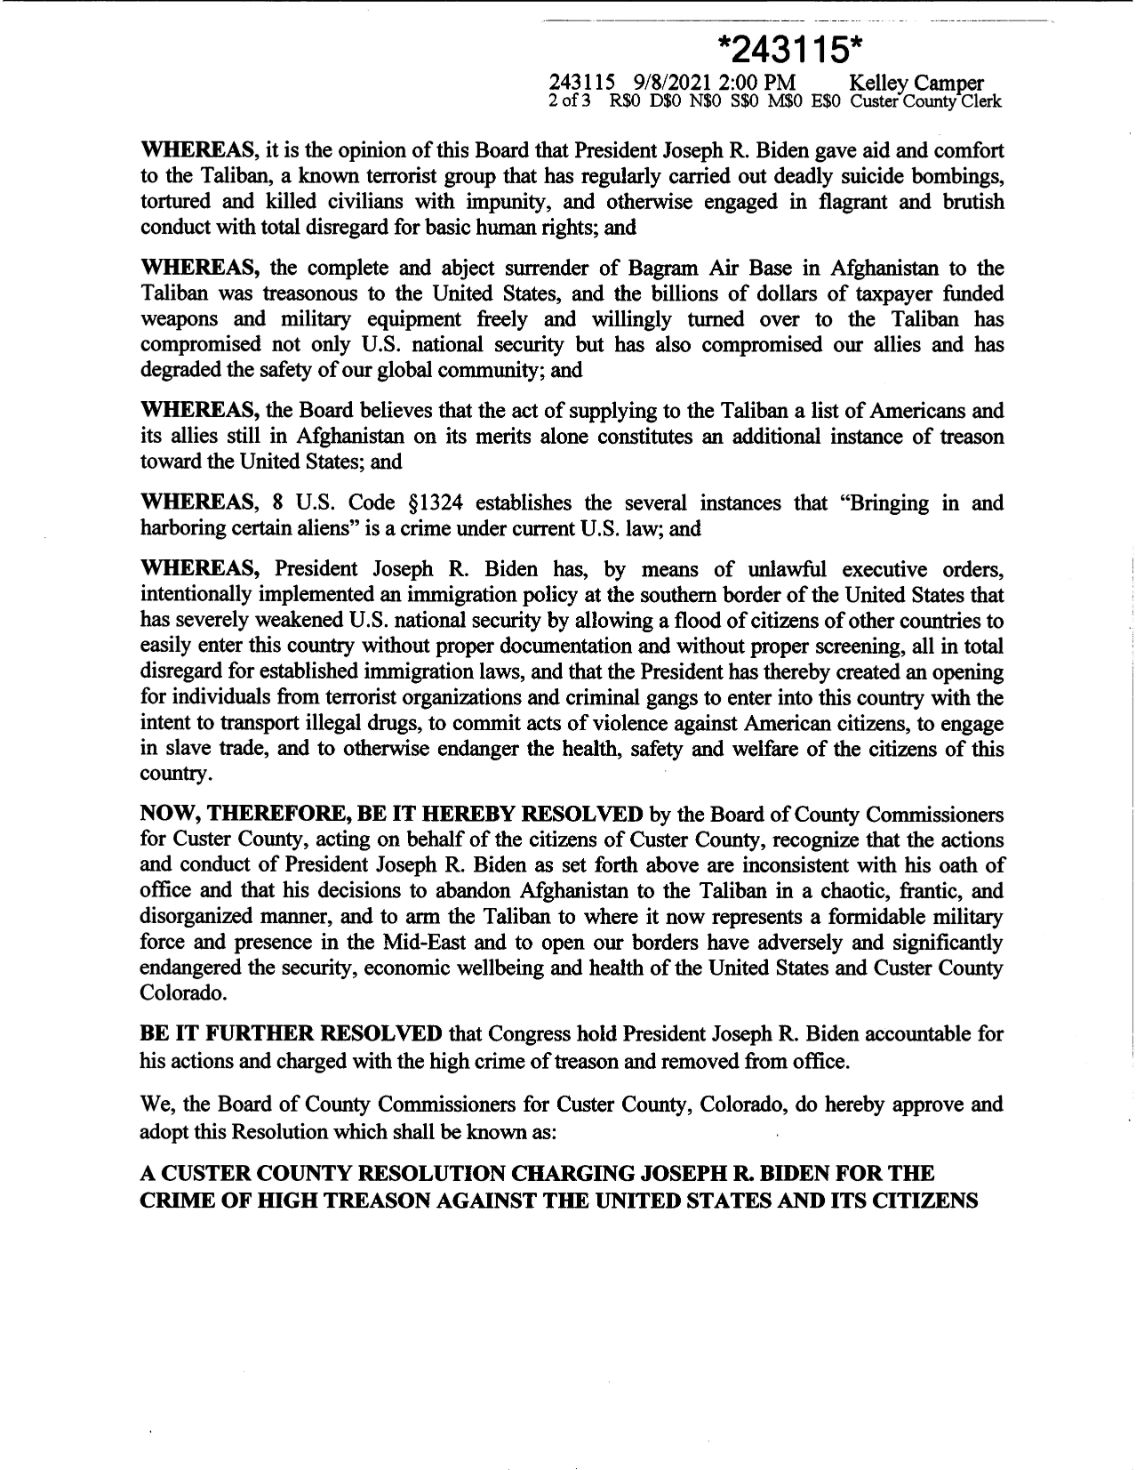 Custer County Colorado Resolution 21-17 Page 2